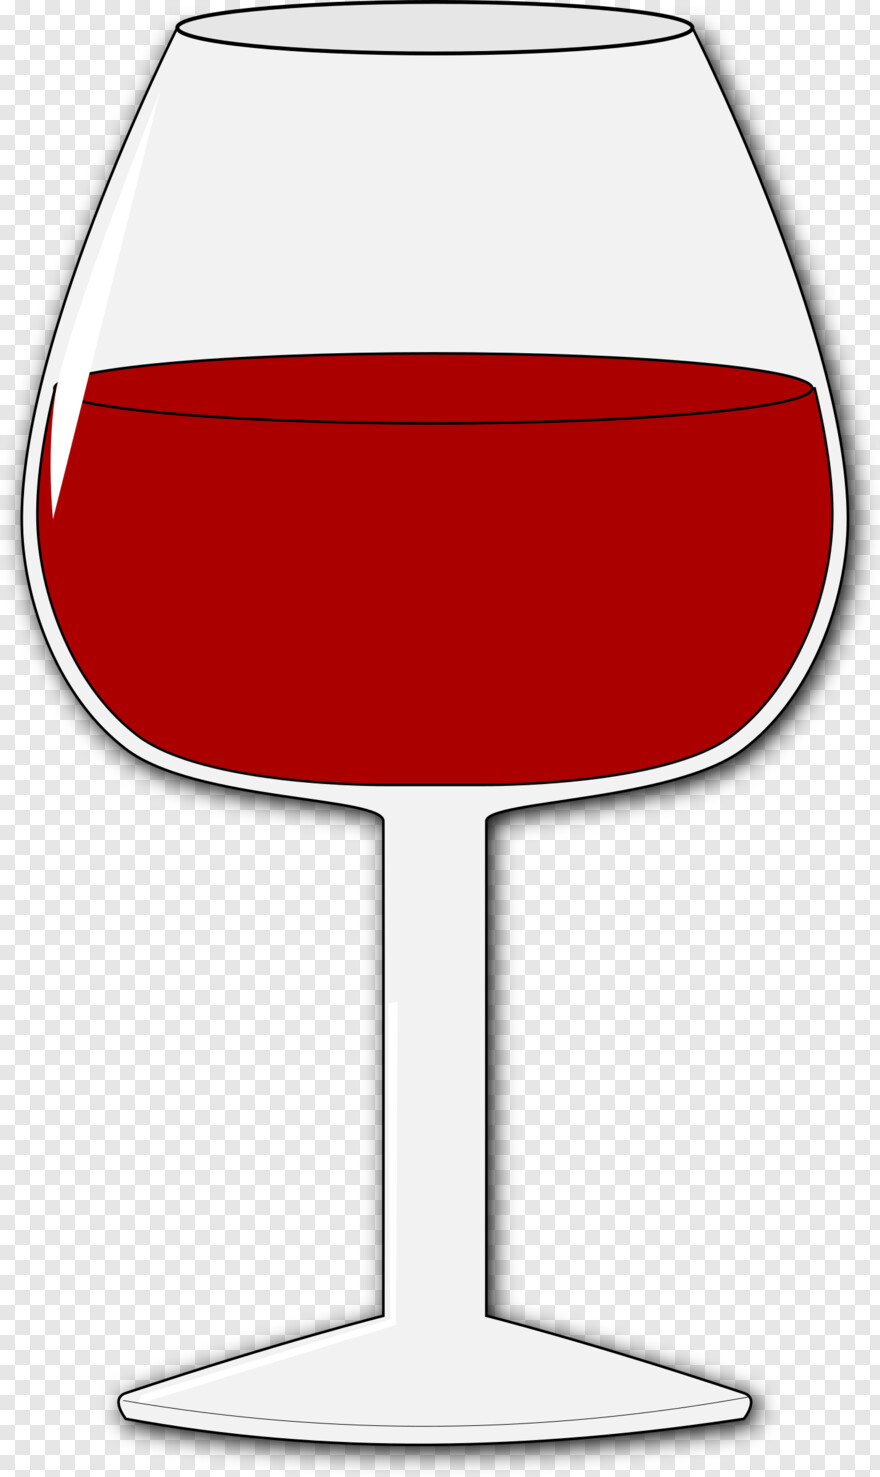 wine-glass # 364571